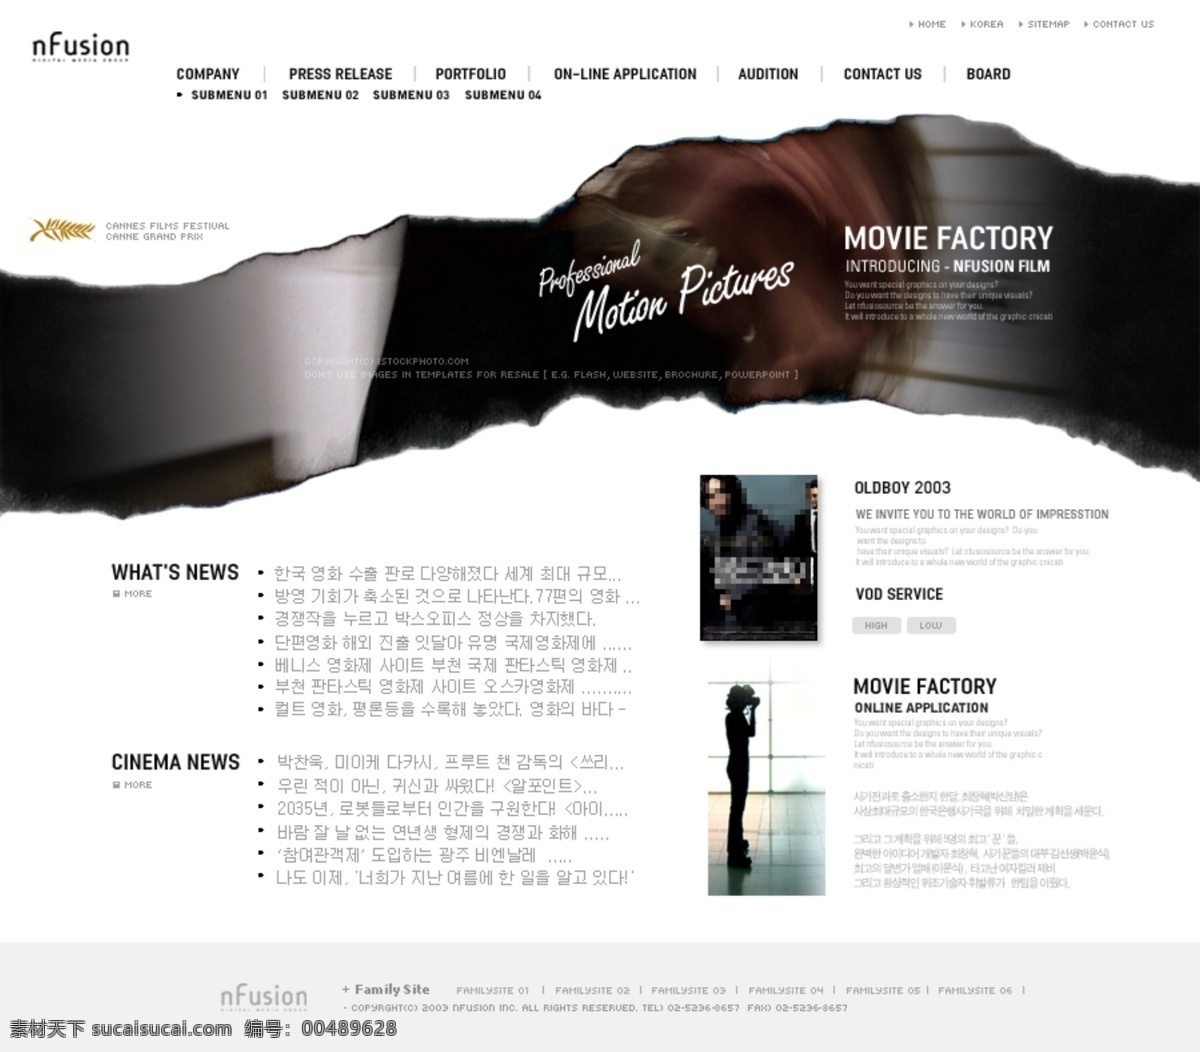 大众 电影院 网站 韩国 网页模板 韩国模板 源文件库 网页素材